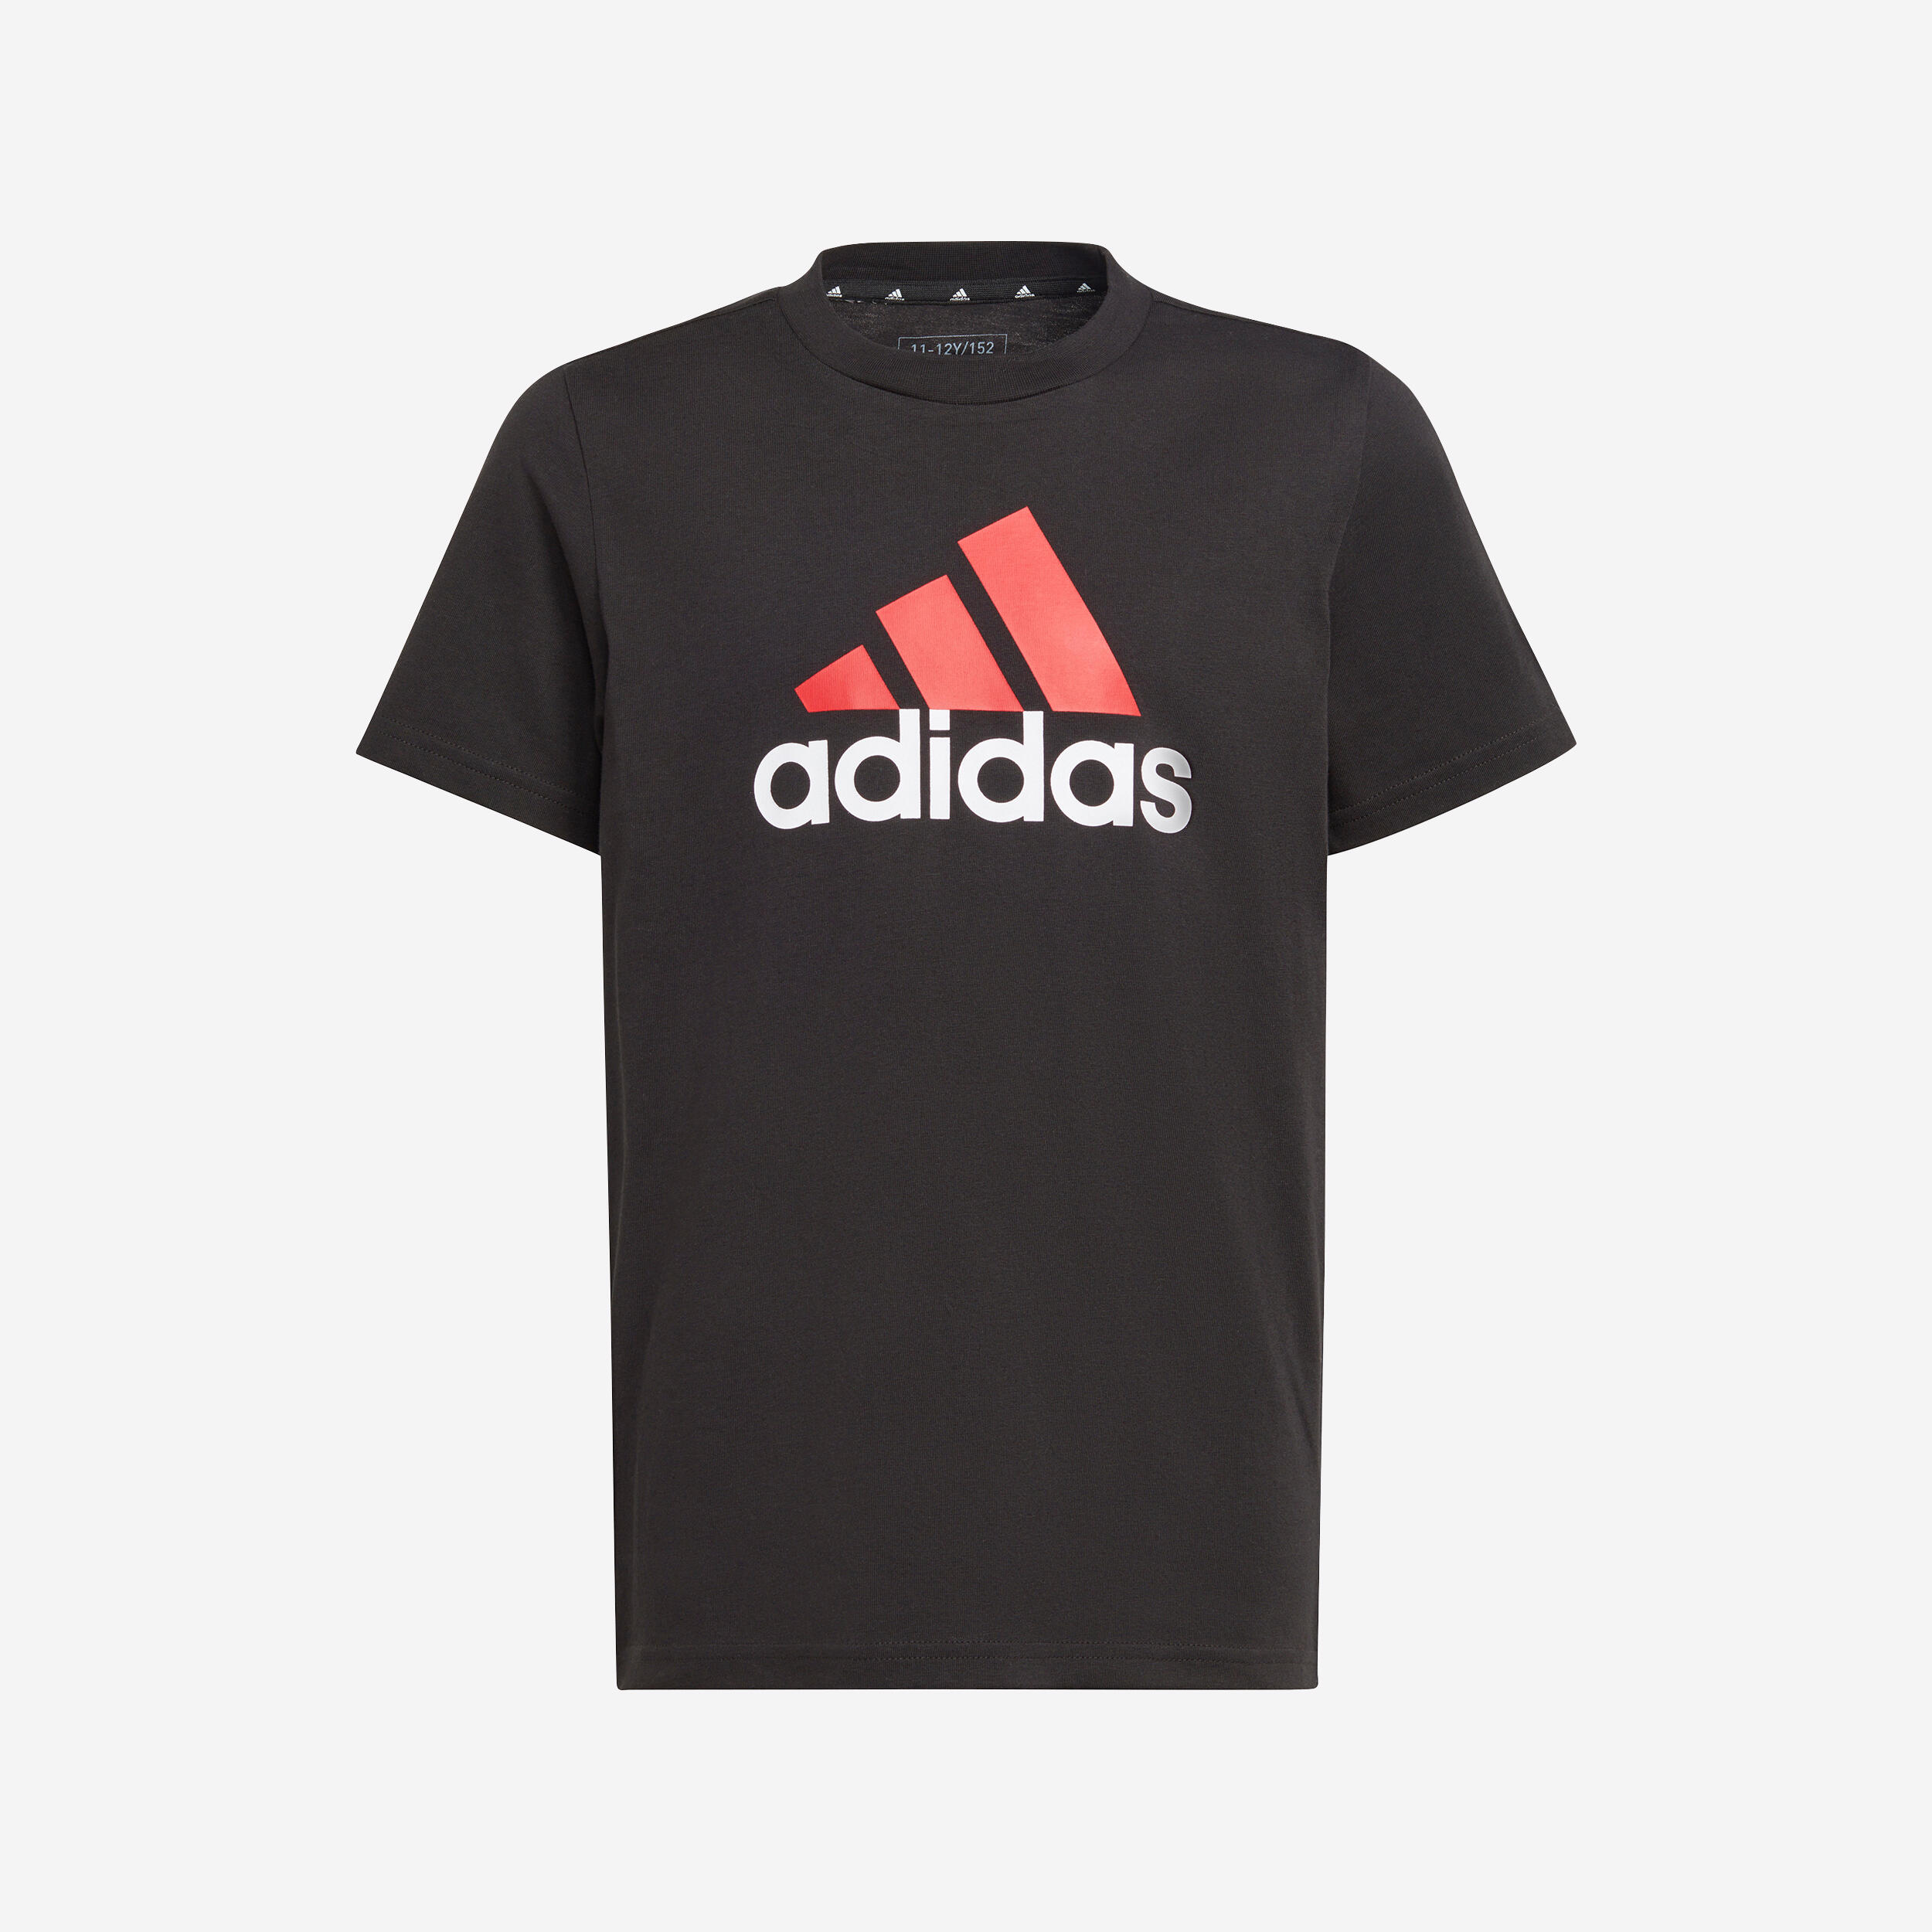 Kids' T-Shirt - Black/Red Logo 1/5